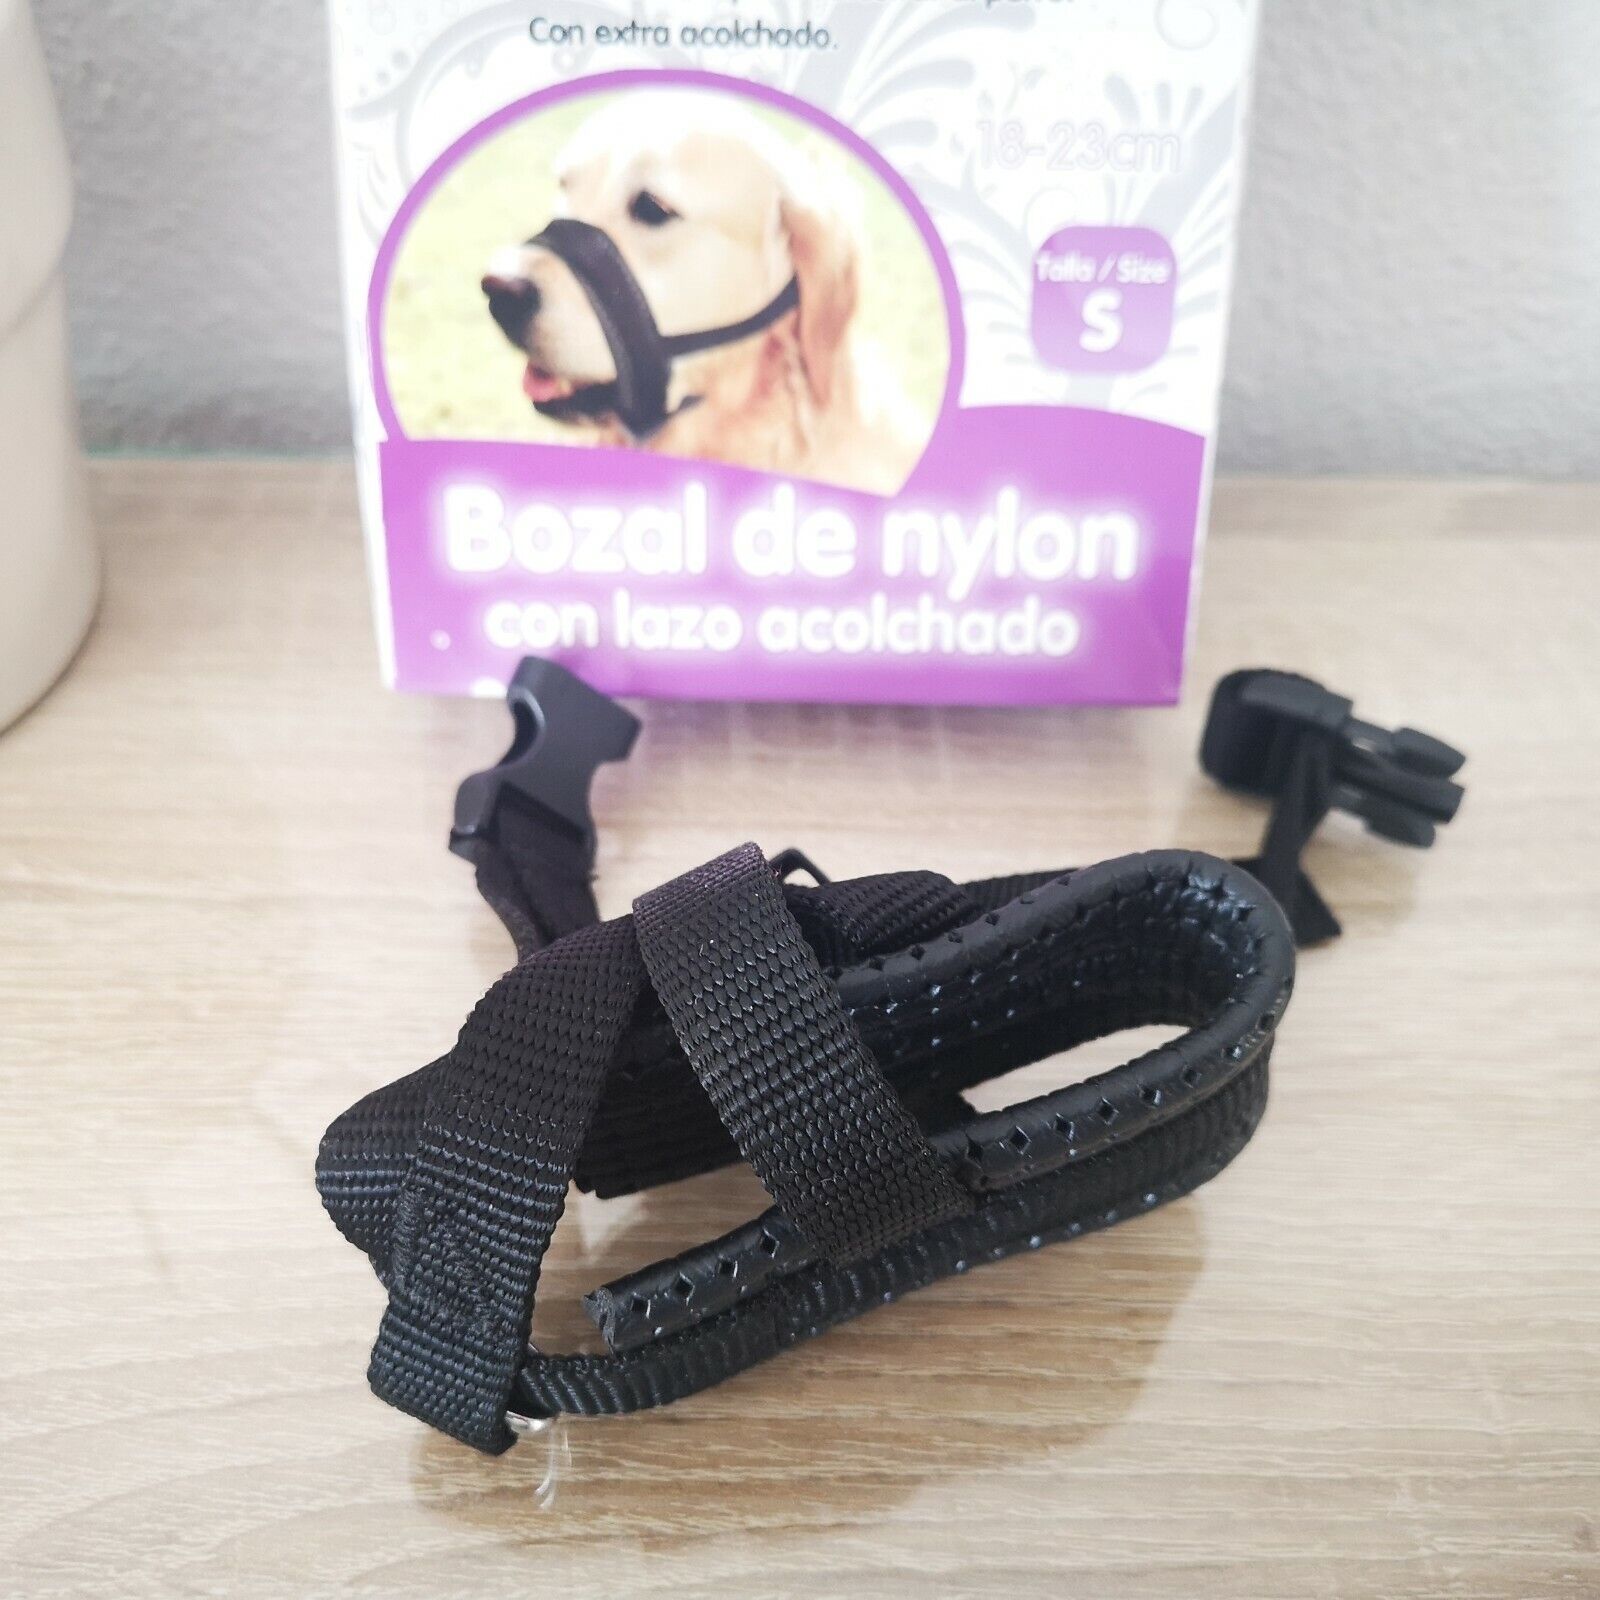 Bozal de nylon con lazo acolchado para perro regulable talla S extra...